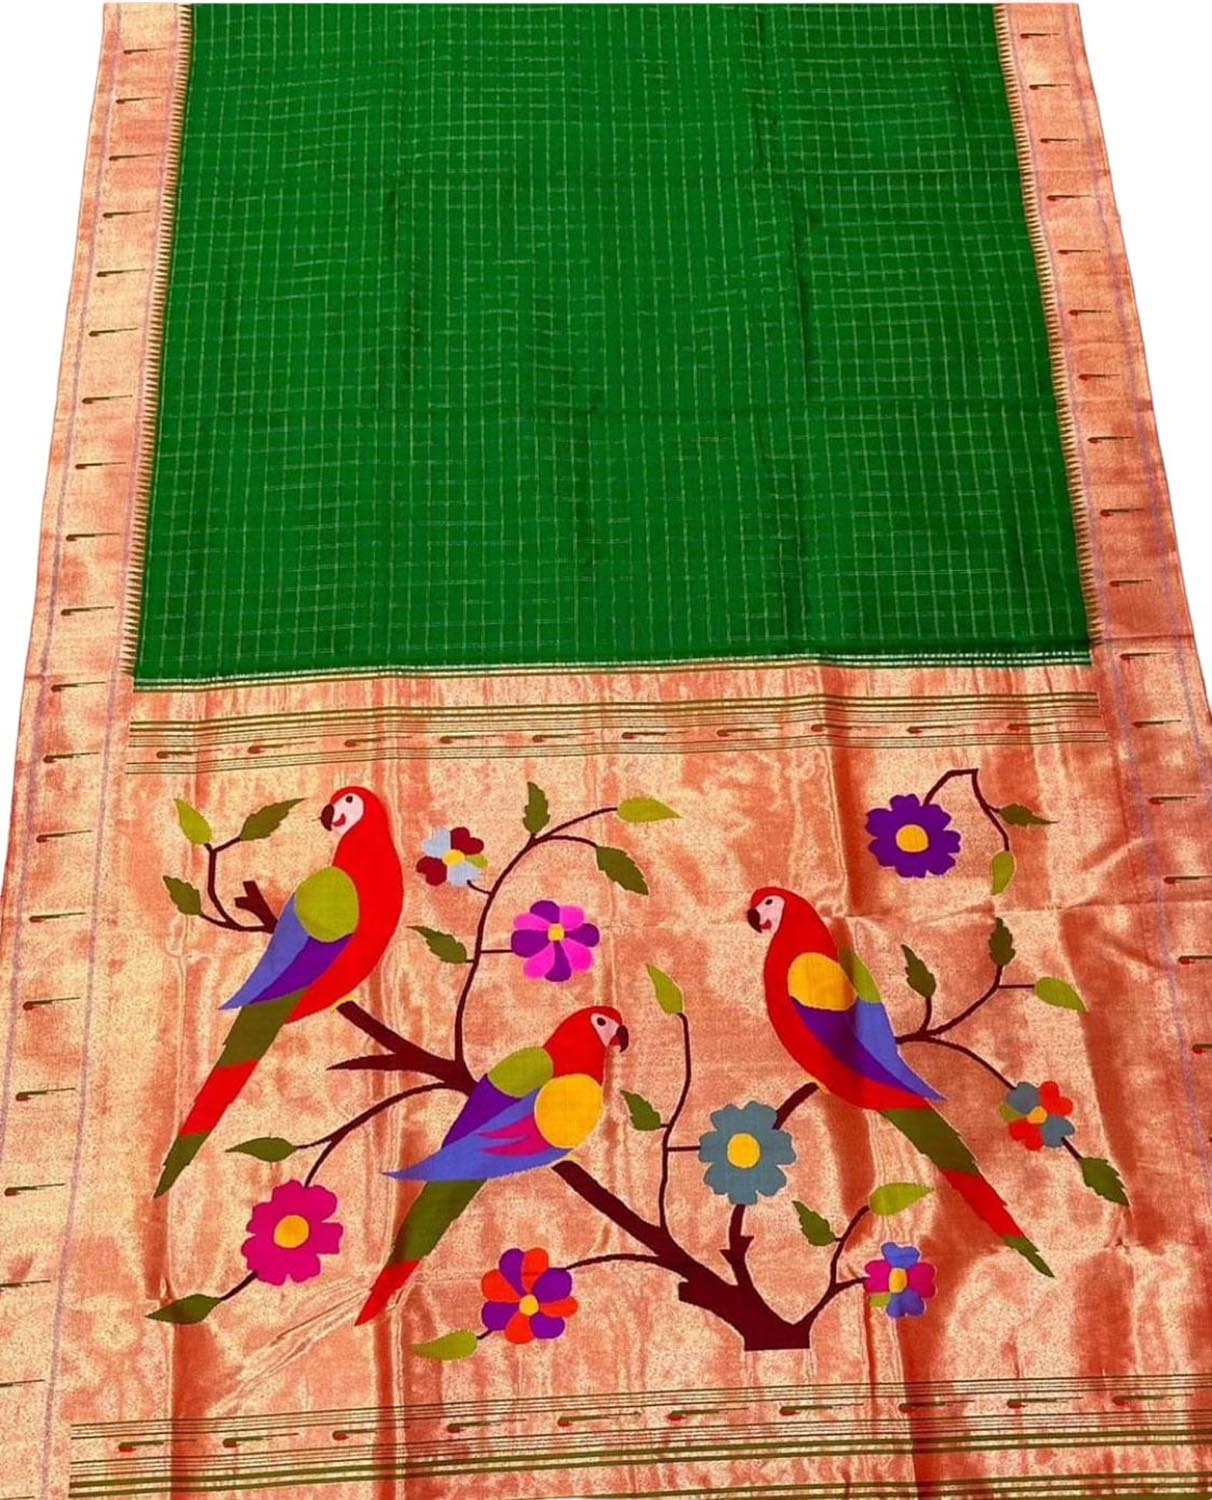 Green Paithani Handloom Pure Silk Saree - Luxurion World